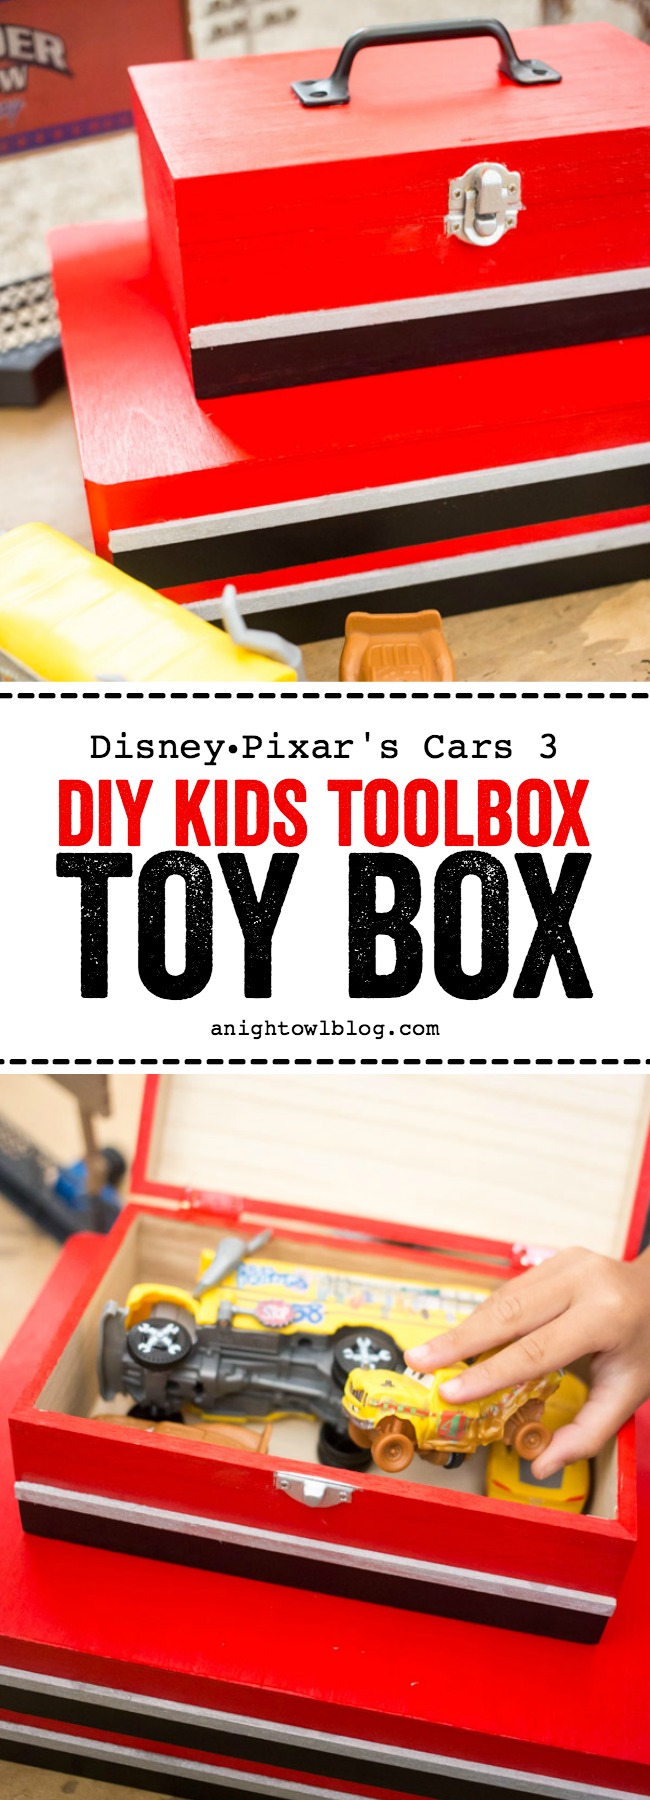 tool box toy box